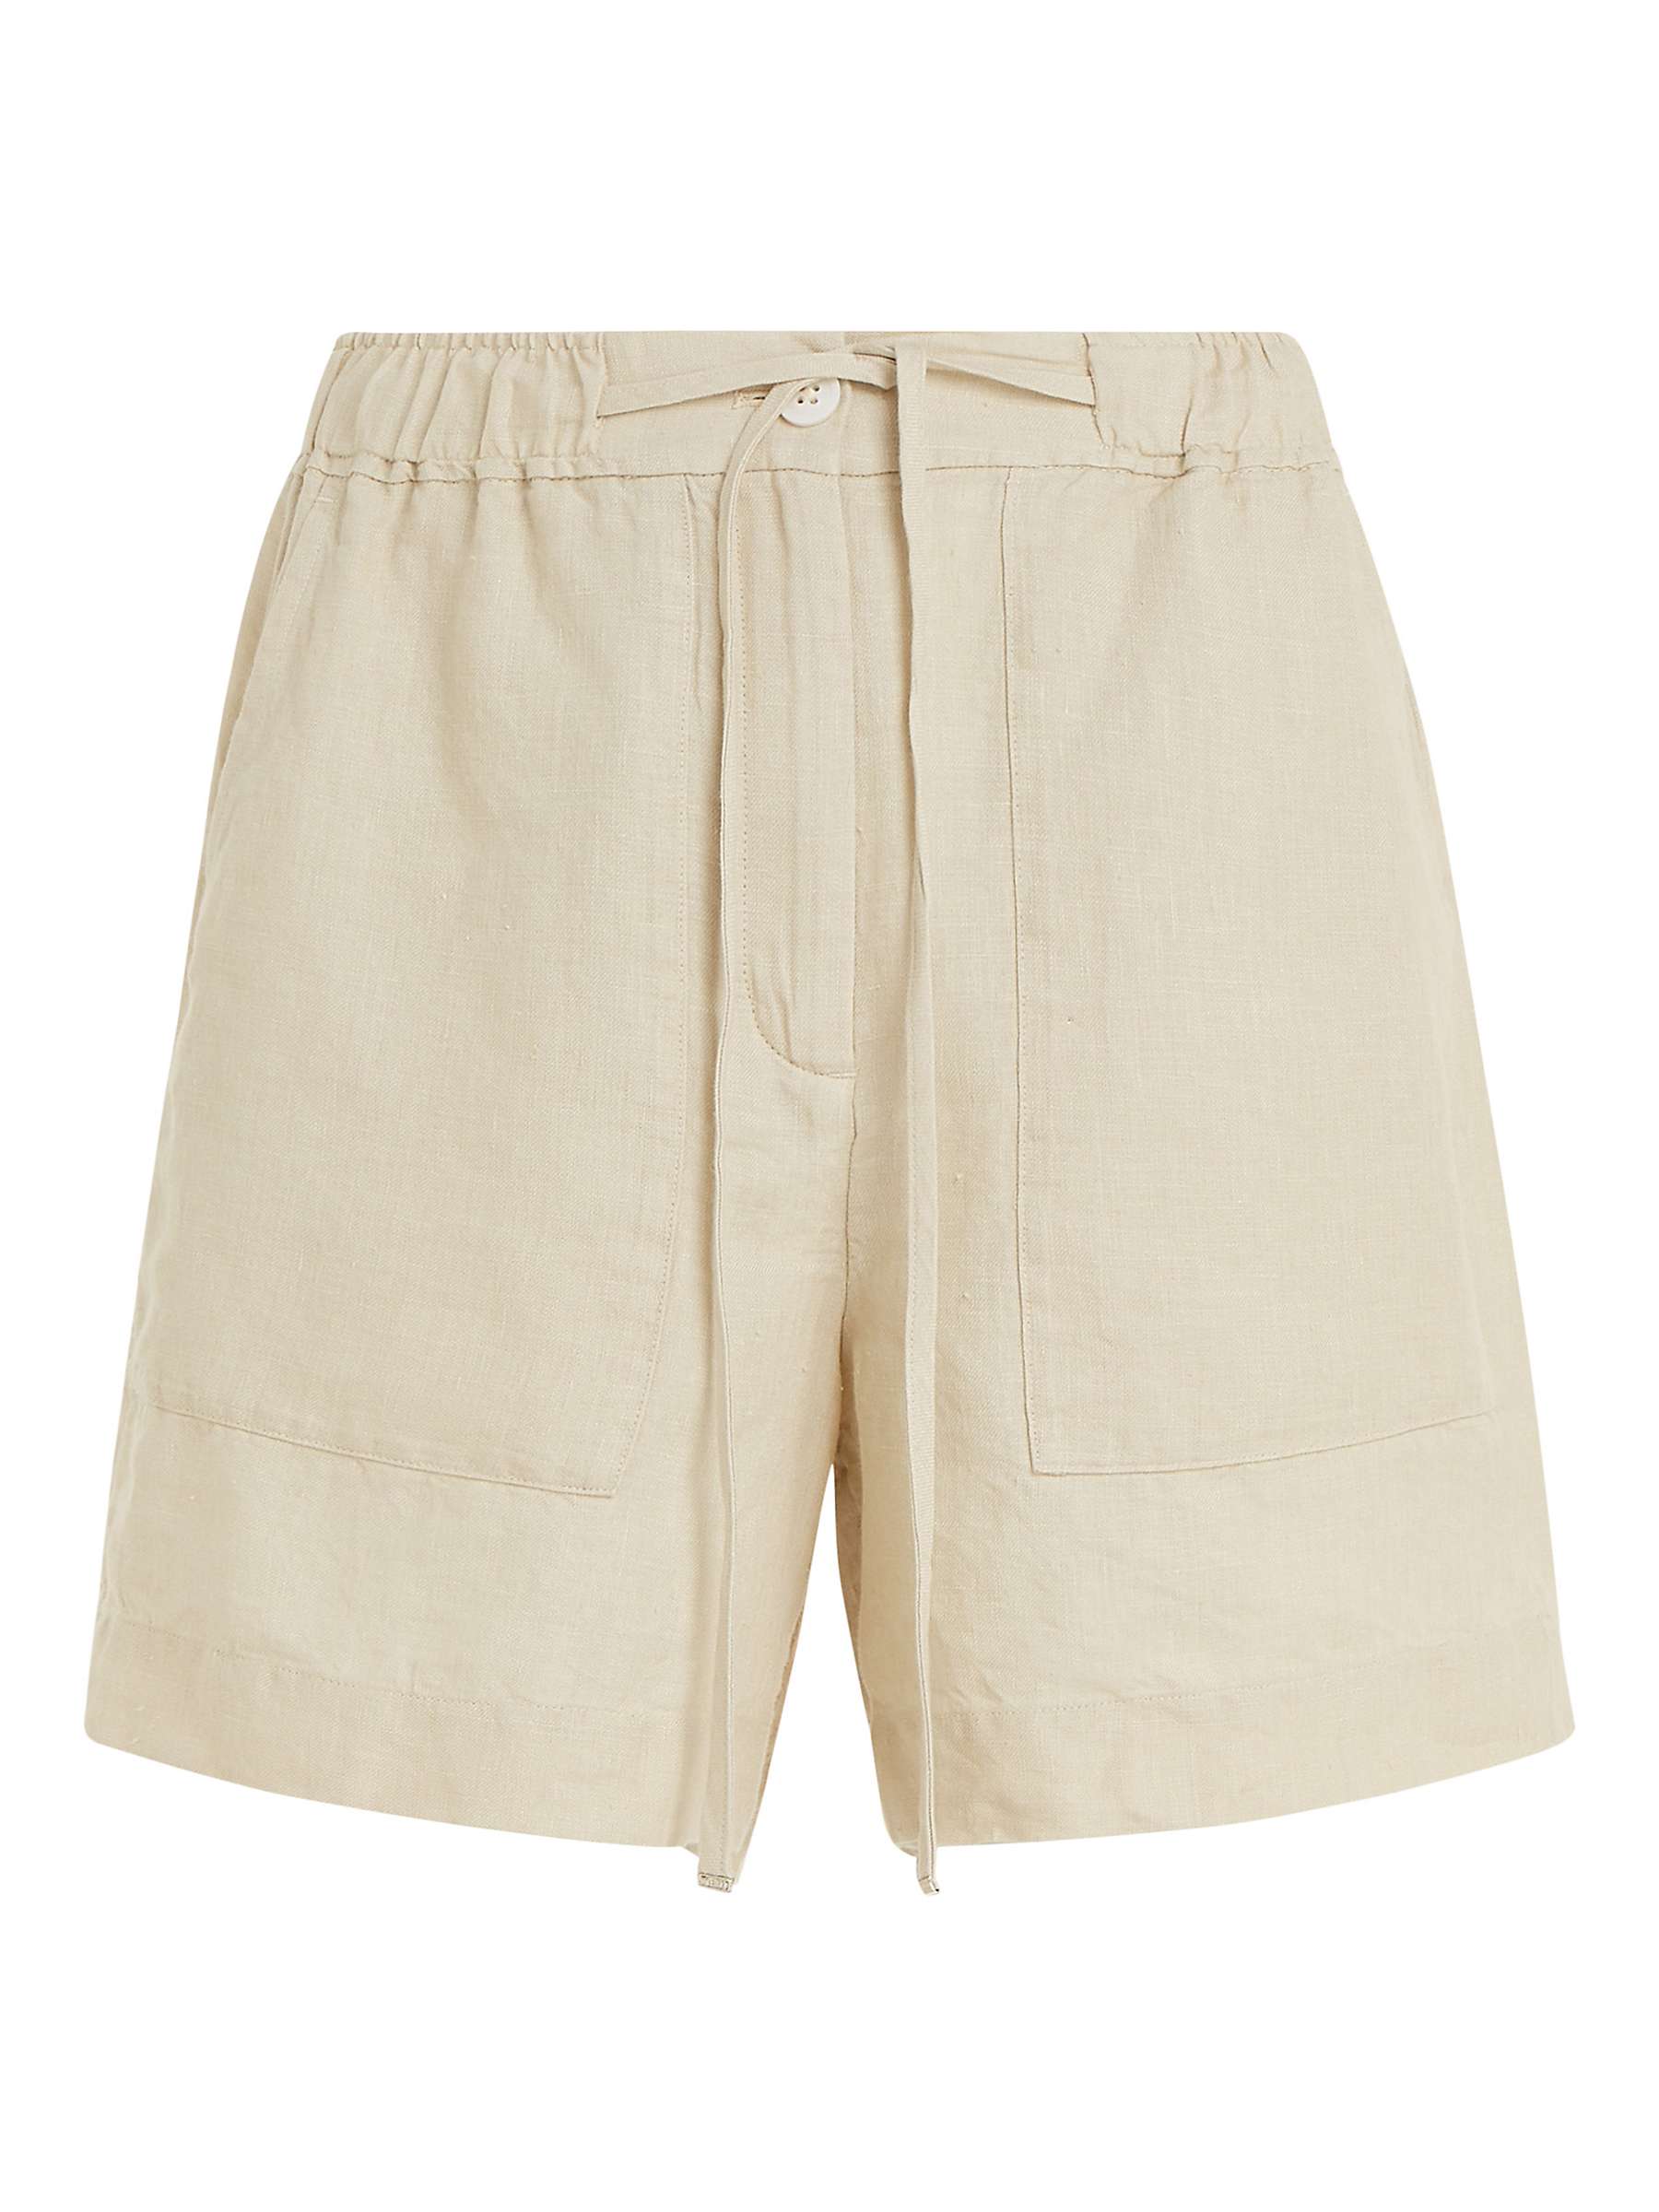 Buy Tommy Hilfiger Linen Shorts, Light Sandalwood Online at johnlewis.com